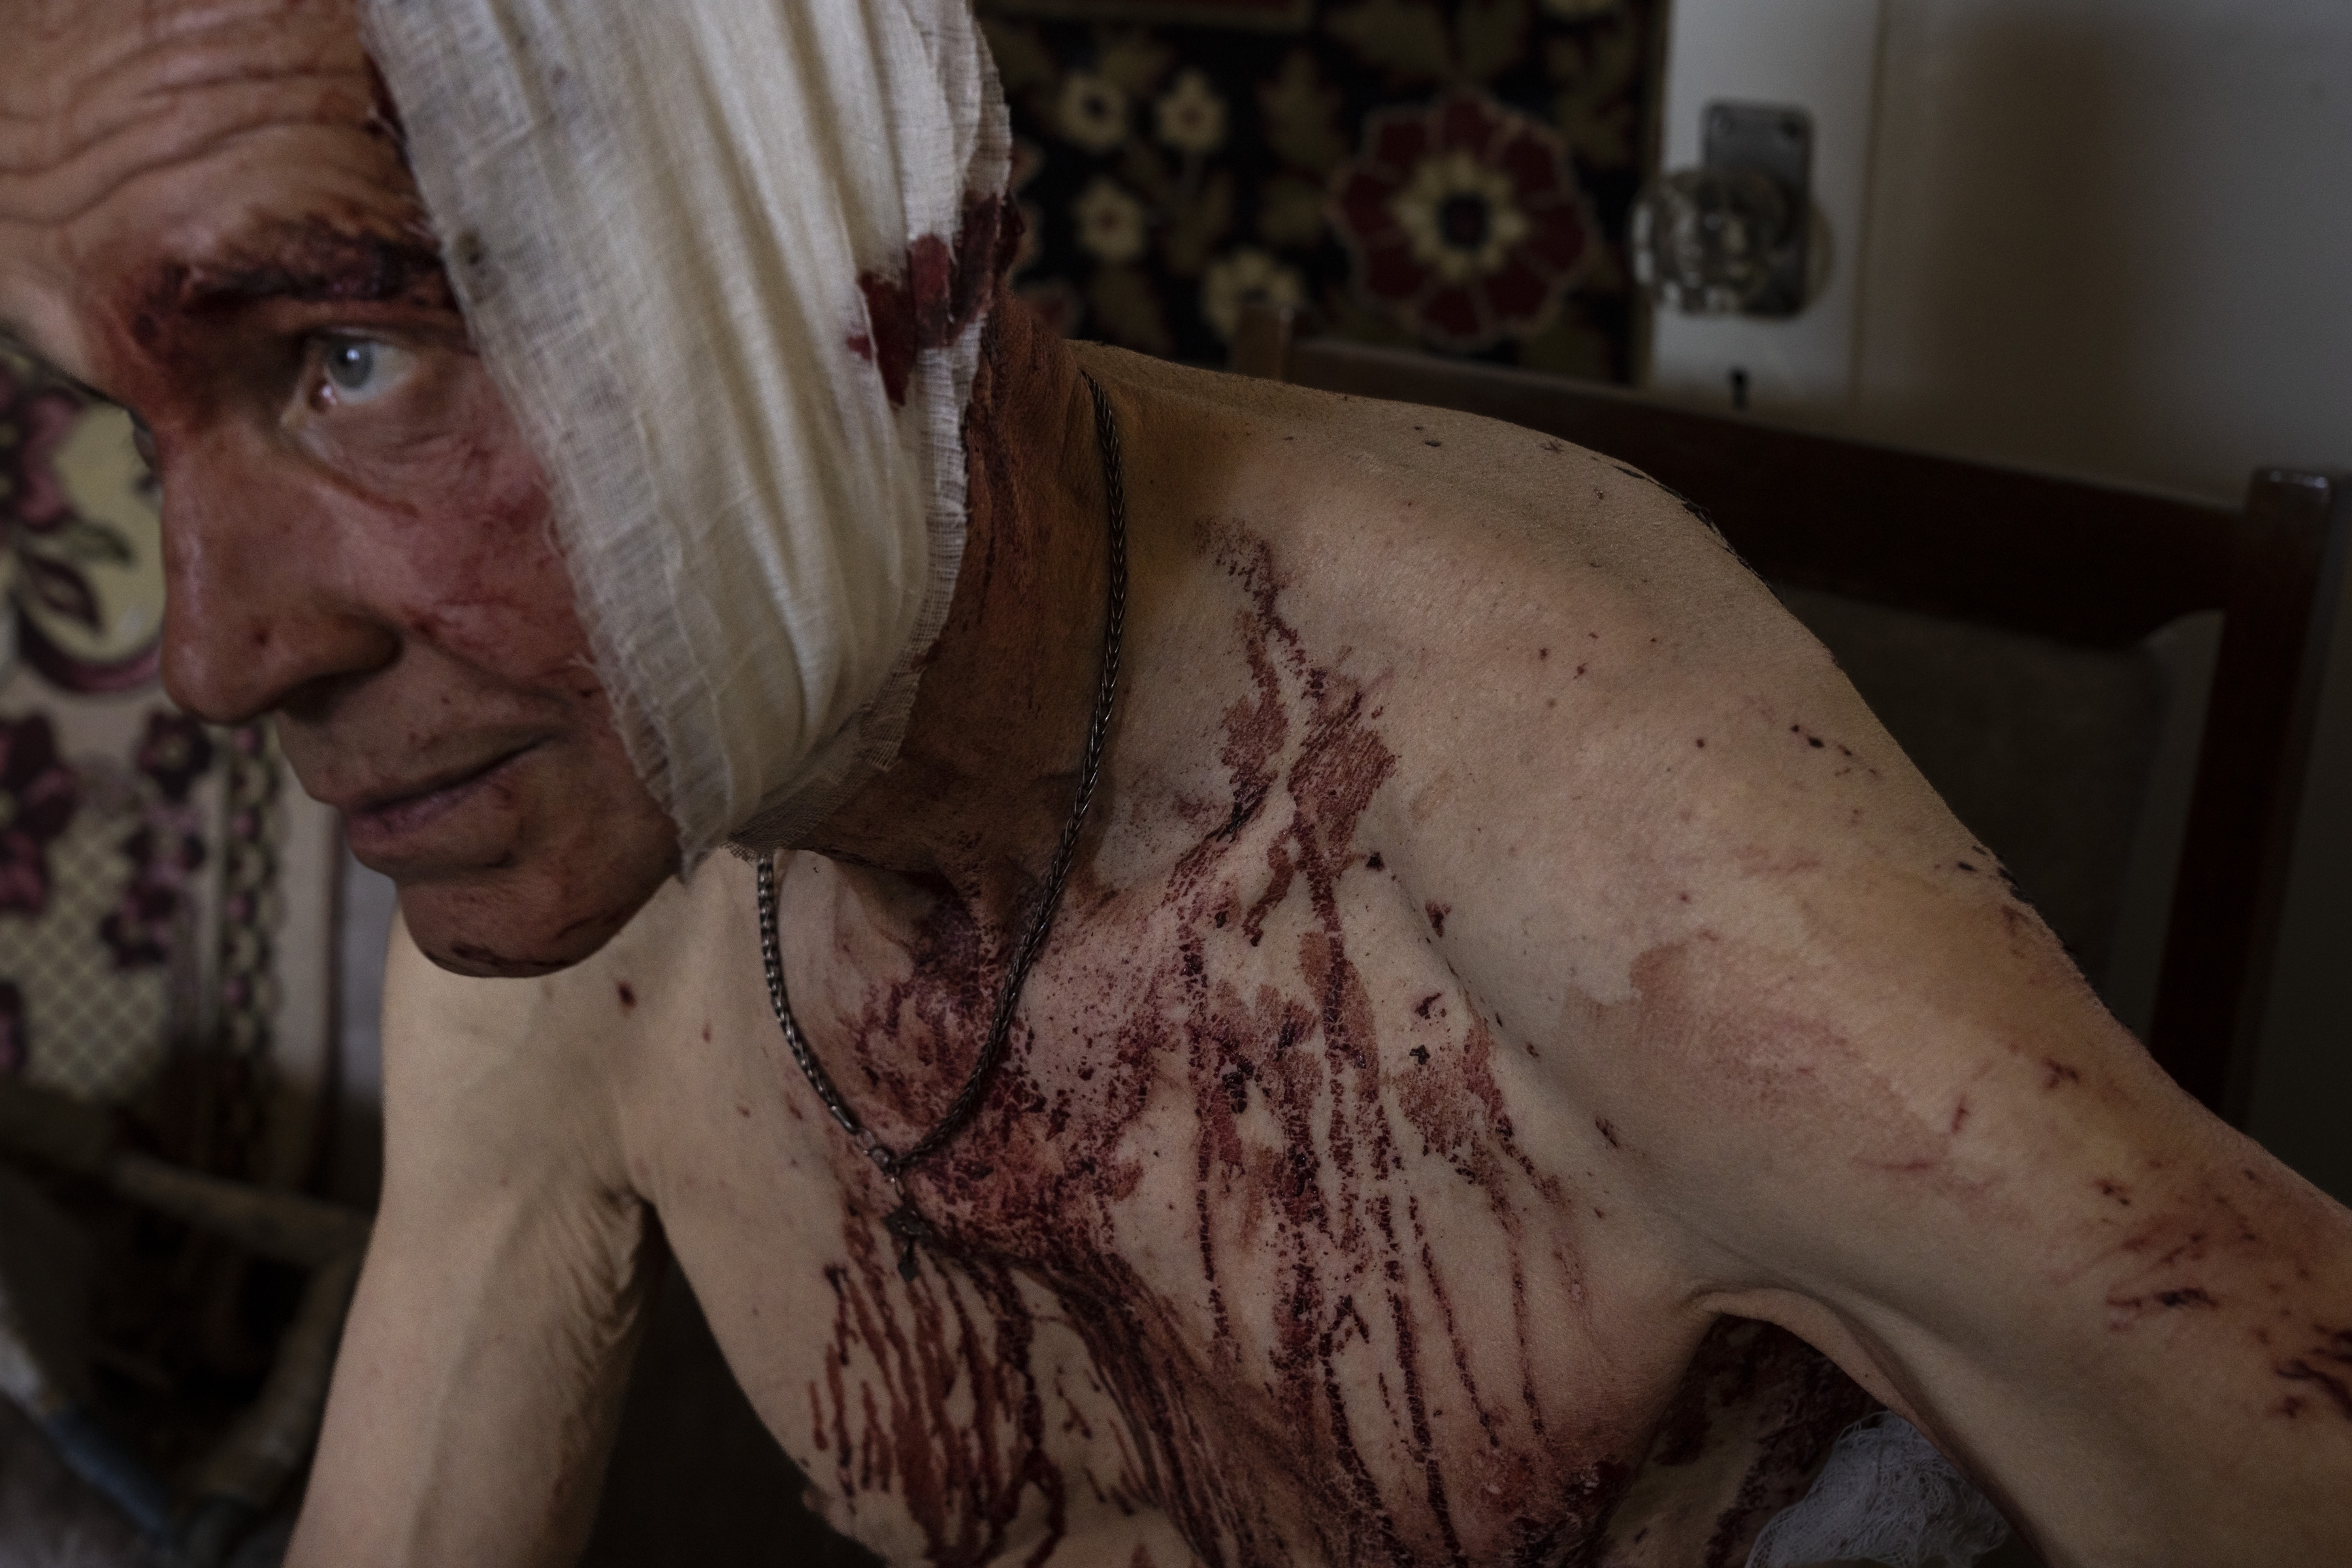 Volodymyr, herido por un golpe, se sienta en su apartamento dañado en Kramatorsk, región de Donetsk, este de Ucrania, el 7 de julio de 2022 (Foto AP/Nariman El-Mofty)